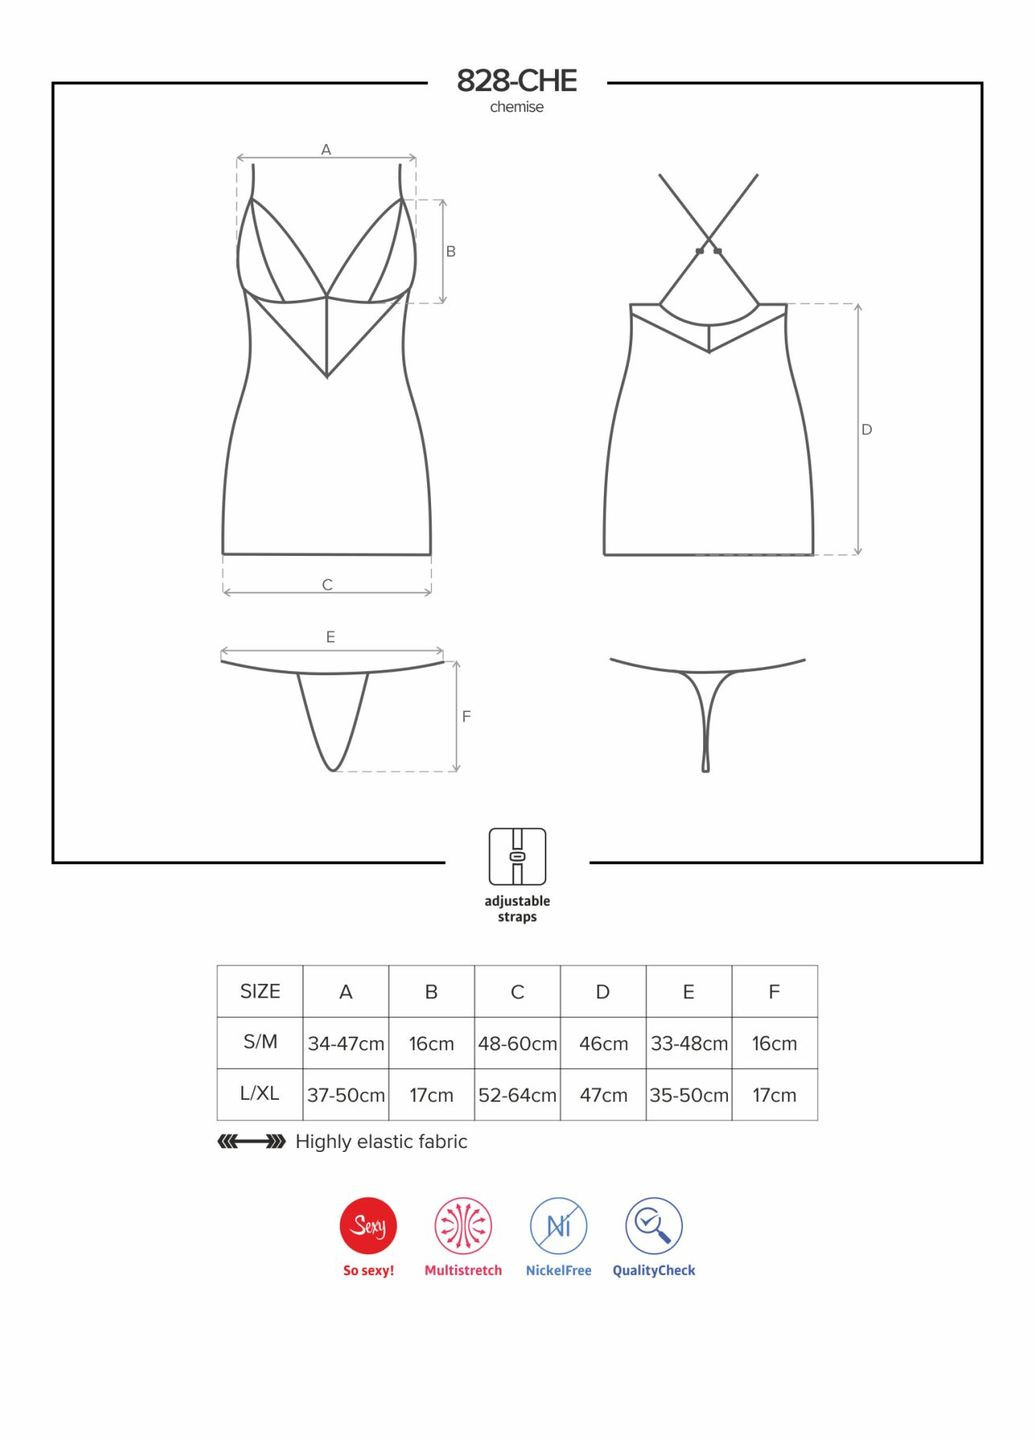 Сатиновый комплект для сна с кружевом 828-CHE-1 chemise & thong, черный, сорочка, стри Obsessive (297587869)